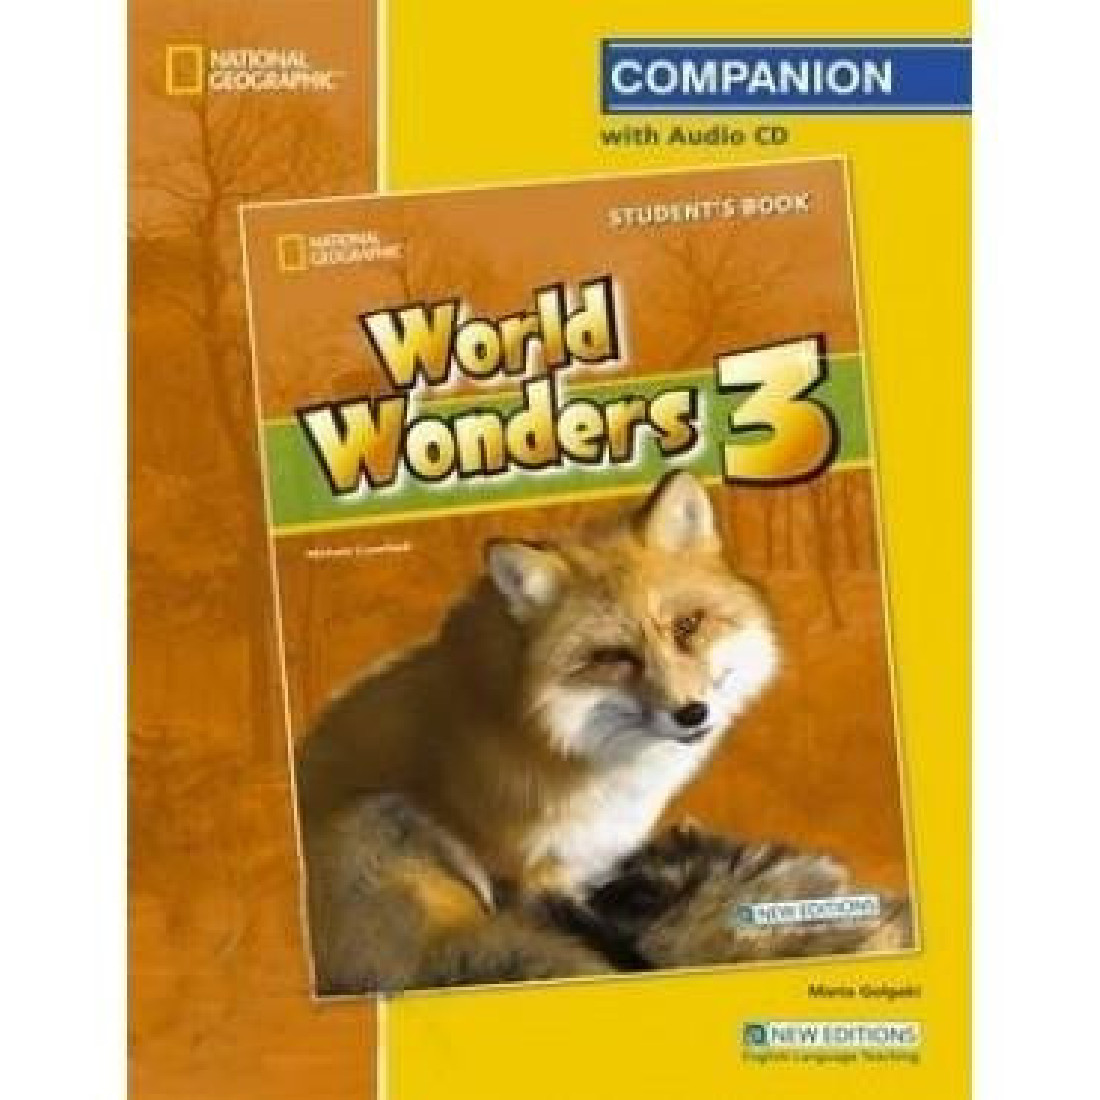 WORLD WONDERS 3 COMPANION ANSWER KEY